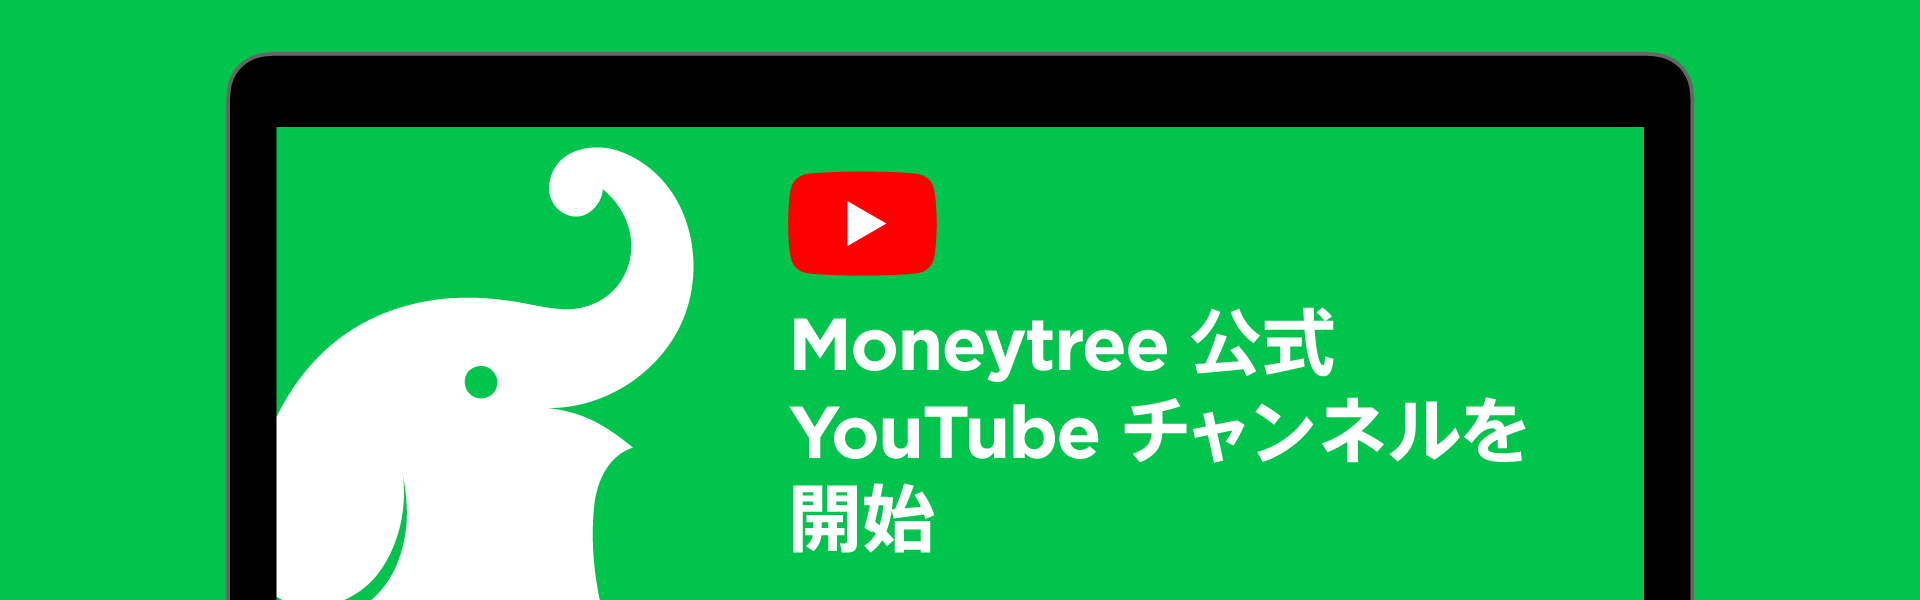 マネーツリー 公式youtubeチャンネルを開設 マネーツリー株式会社のプレスリリース